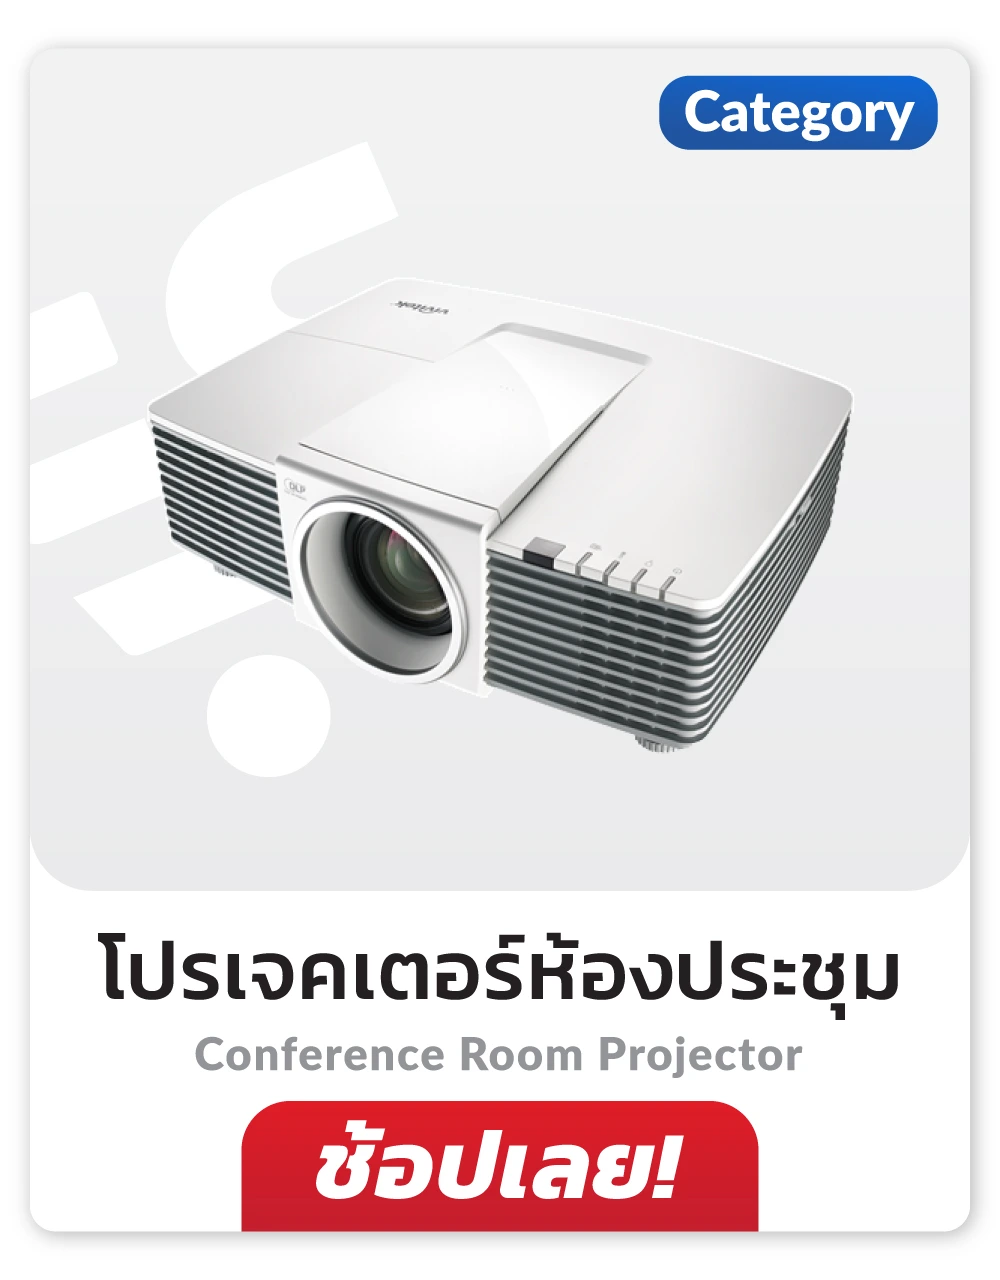 โปรเจคเตอร์ห้องประชุม Conference Projector